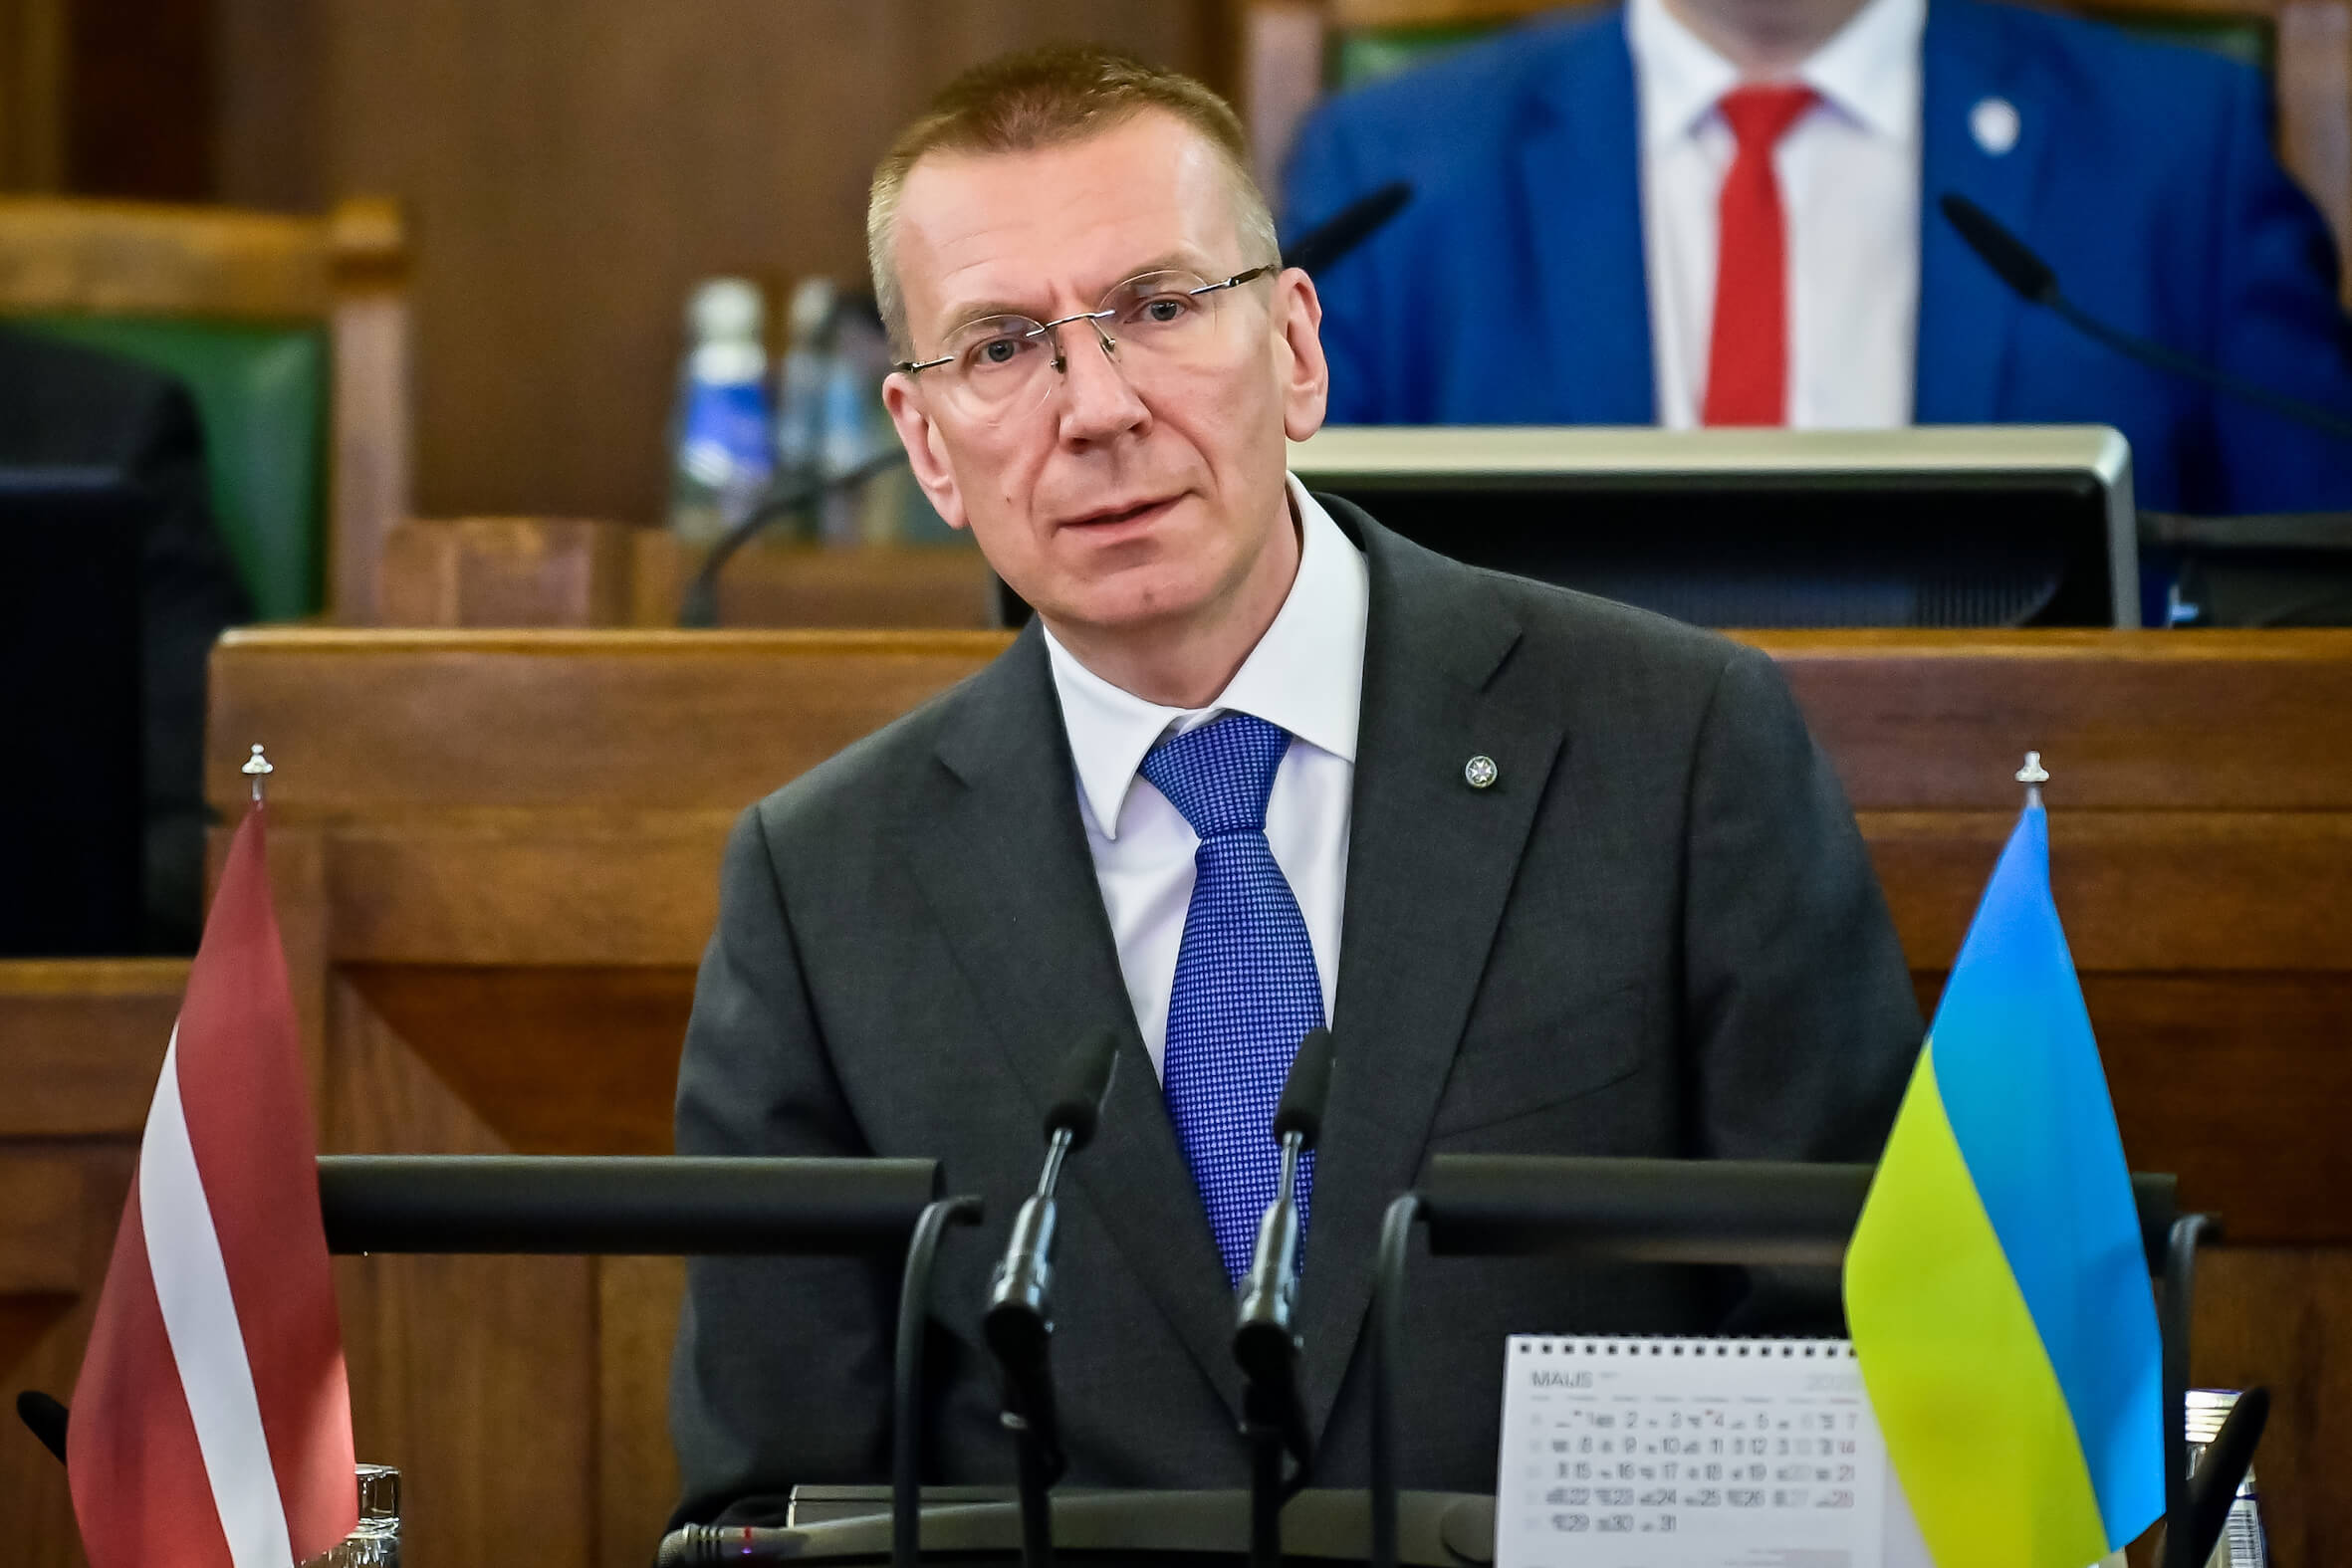 Edgars Rinkevics est le premier président de Lettonie ouvertement homosexuel.